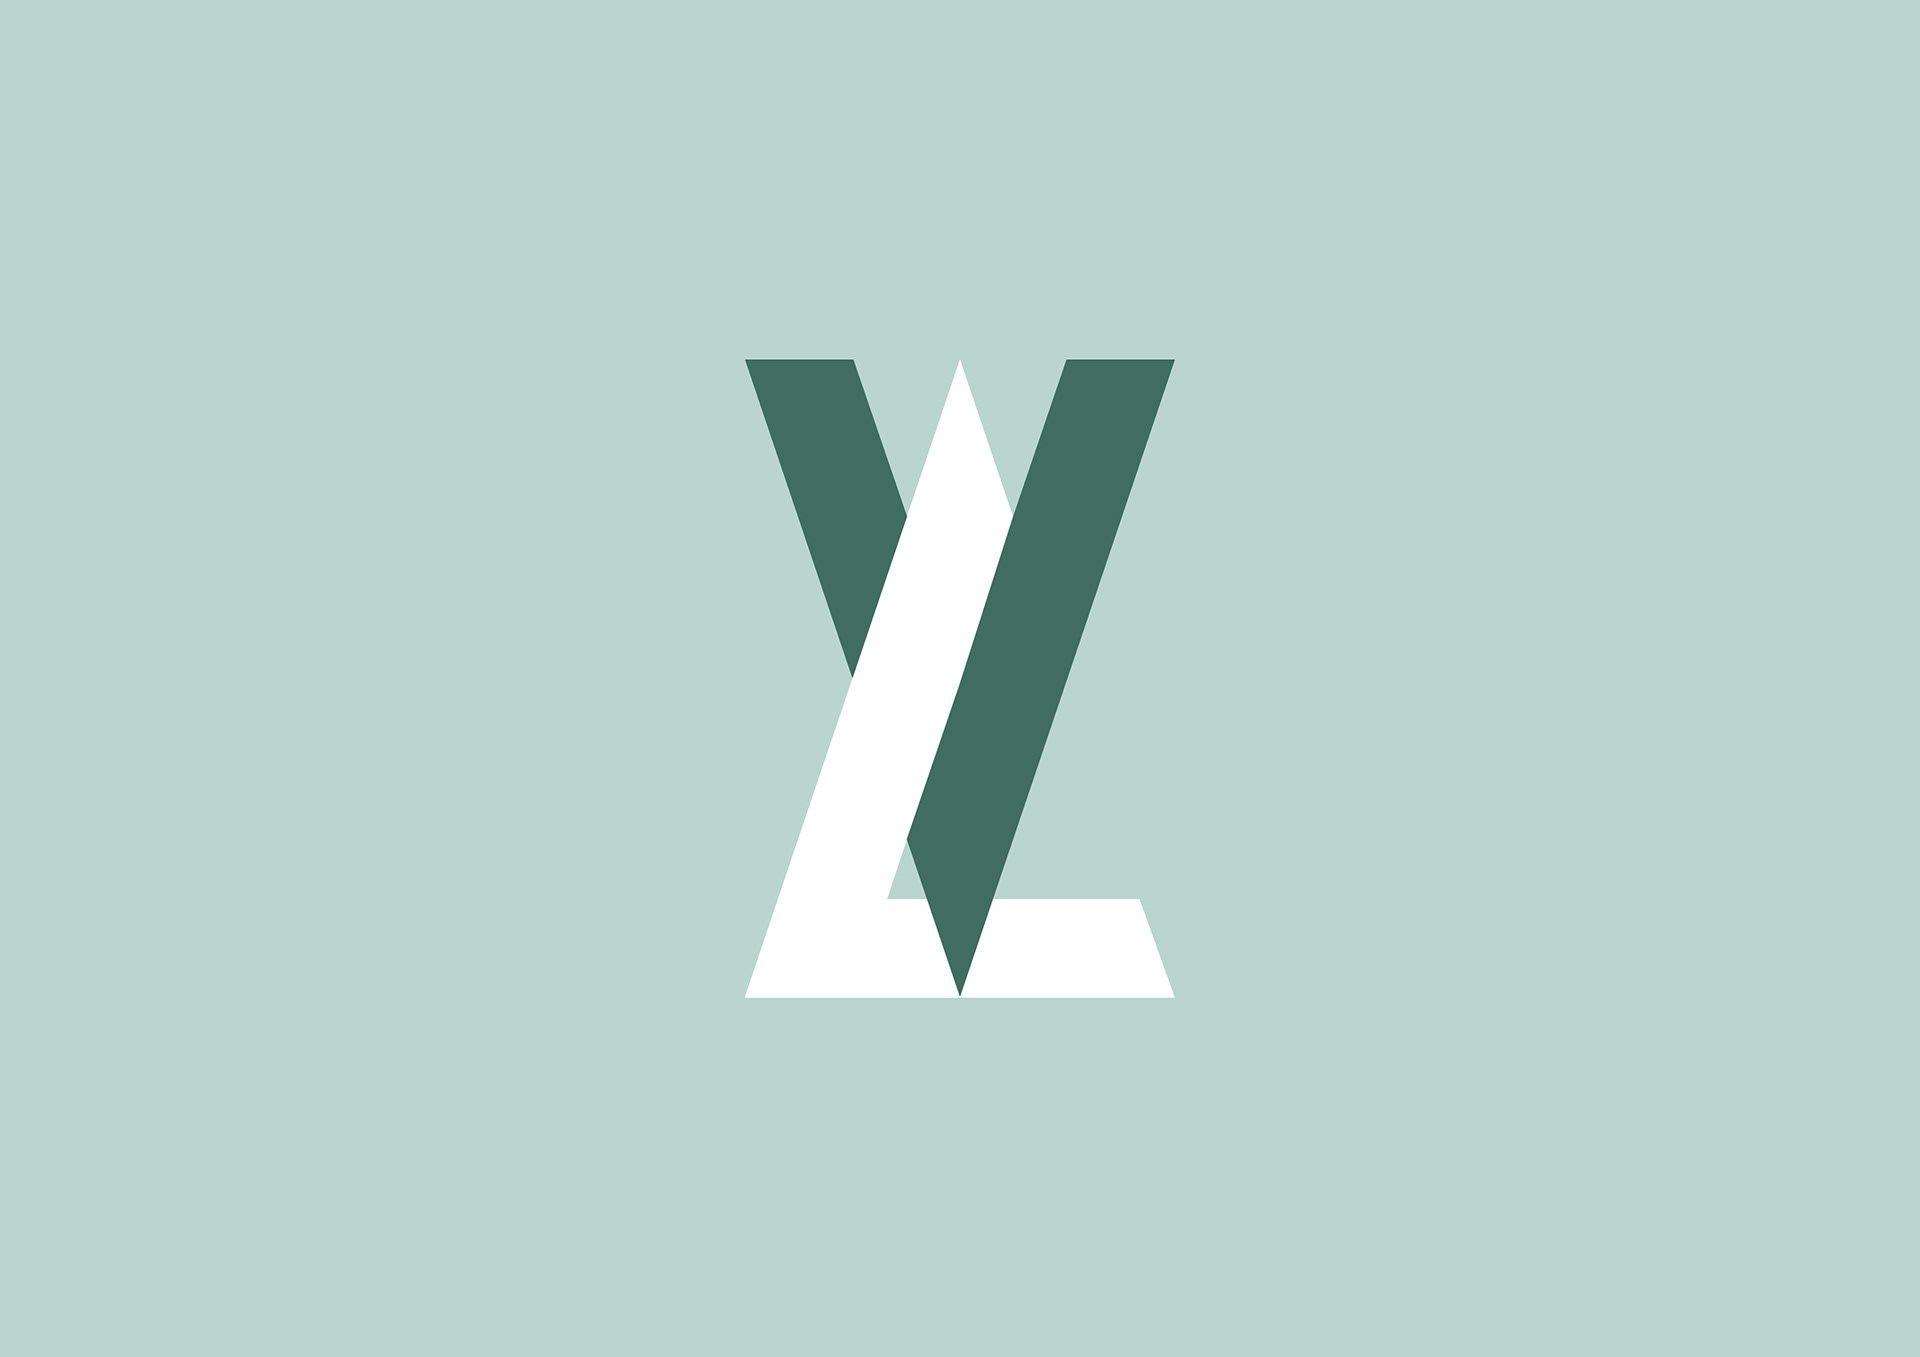 VL Logo - Maurizio Pagnozzi // Vittoria Lombardi